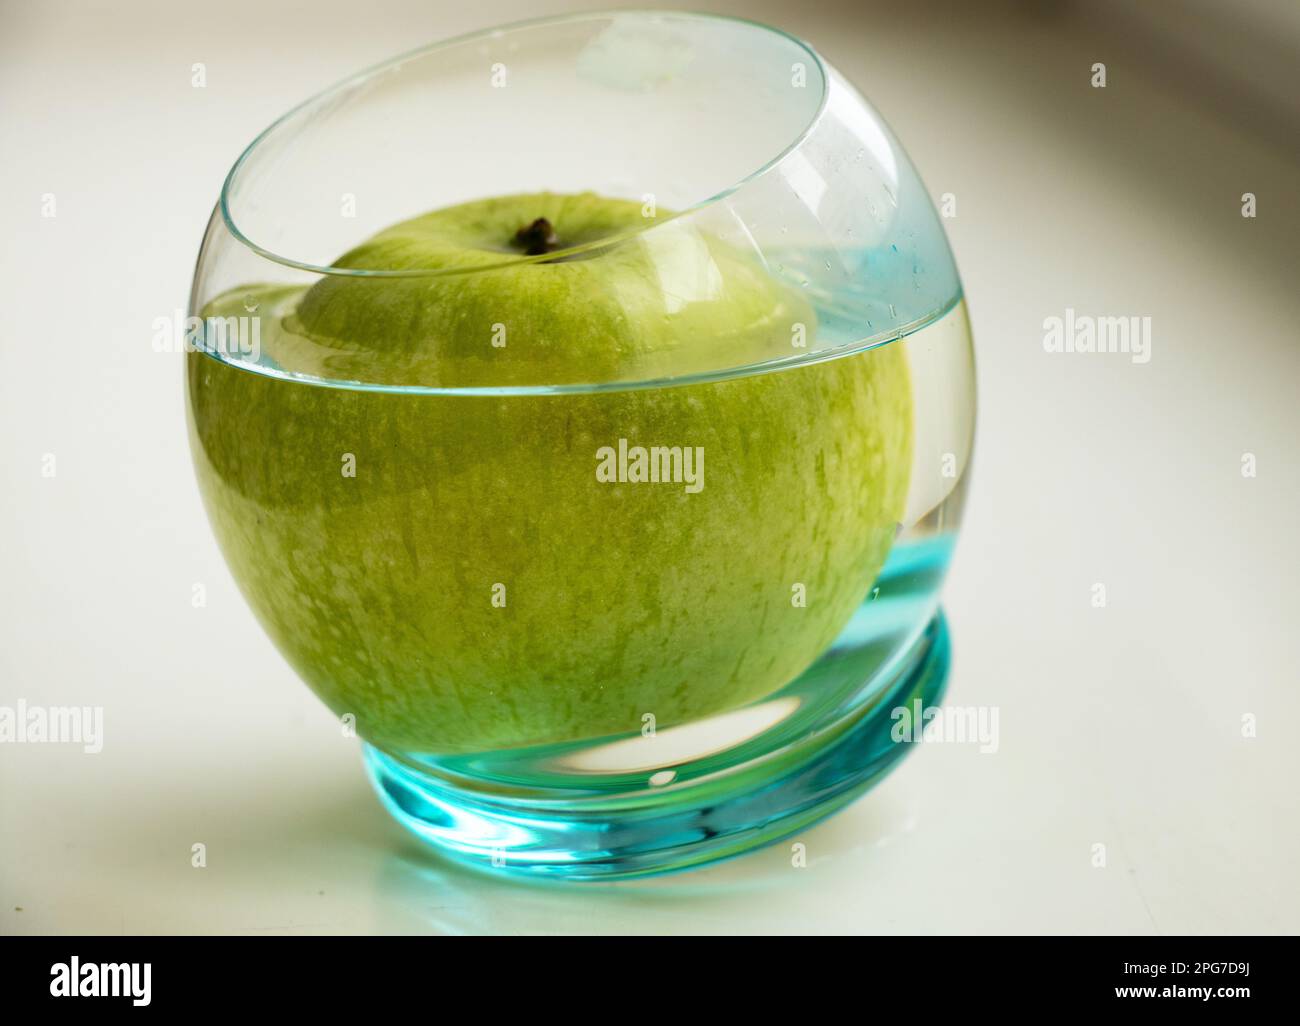 Ein grüner Apfel in einem Glas Wasser auf hellem Hintergrund Stockfoto